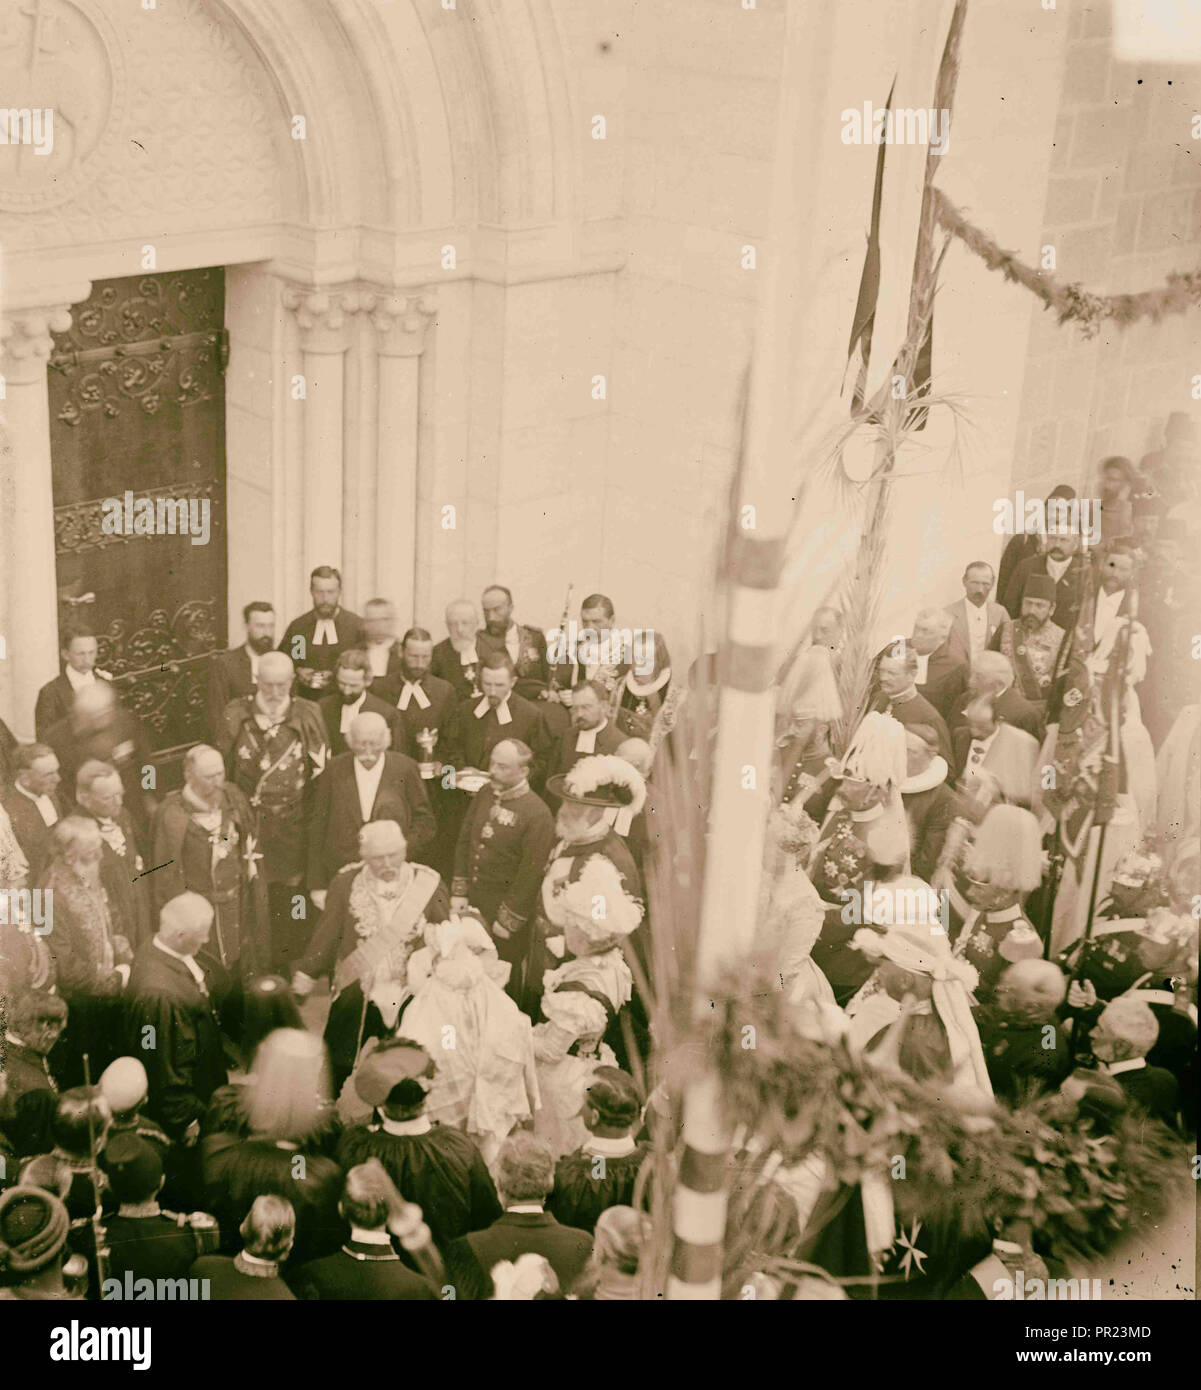 Visite d'État à Jérusalem de Guillaume II d'Allemagne en 1898 Cérémonie à l'Église du Rédempteur. 1898, Jérusalem, Israël Banque D'Images